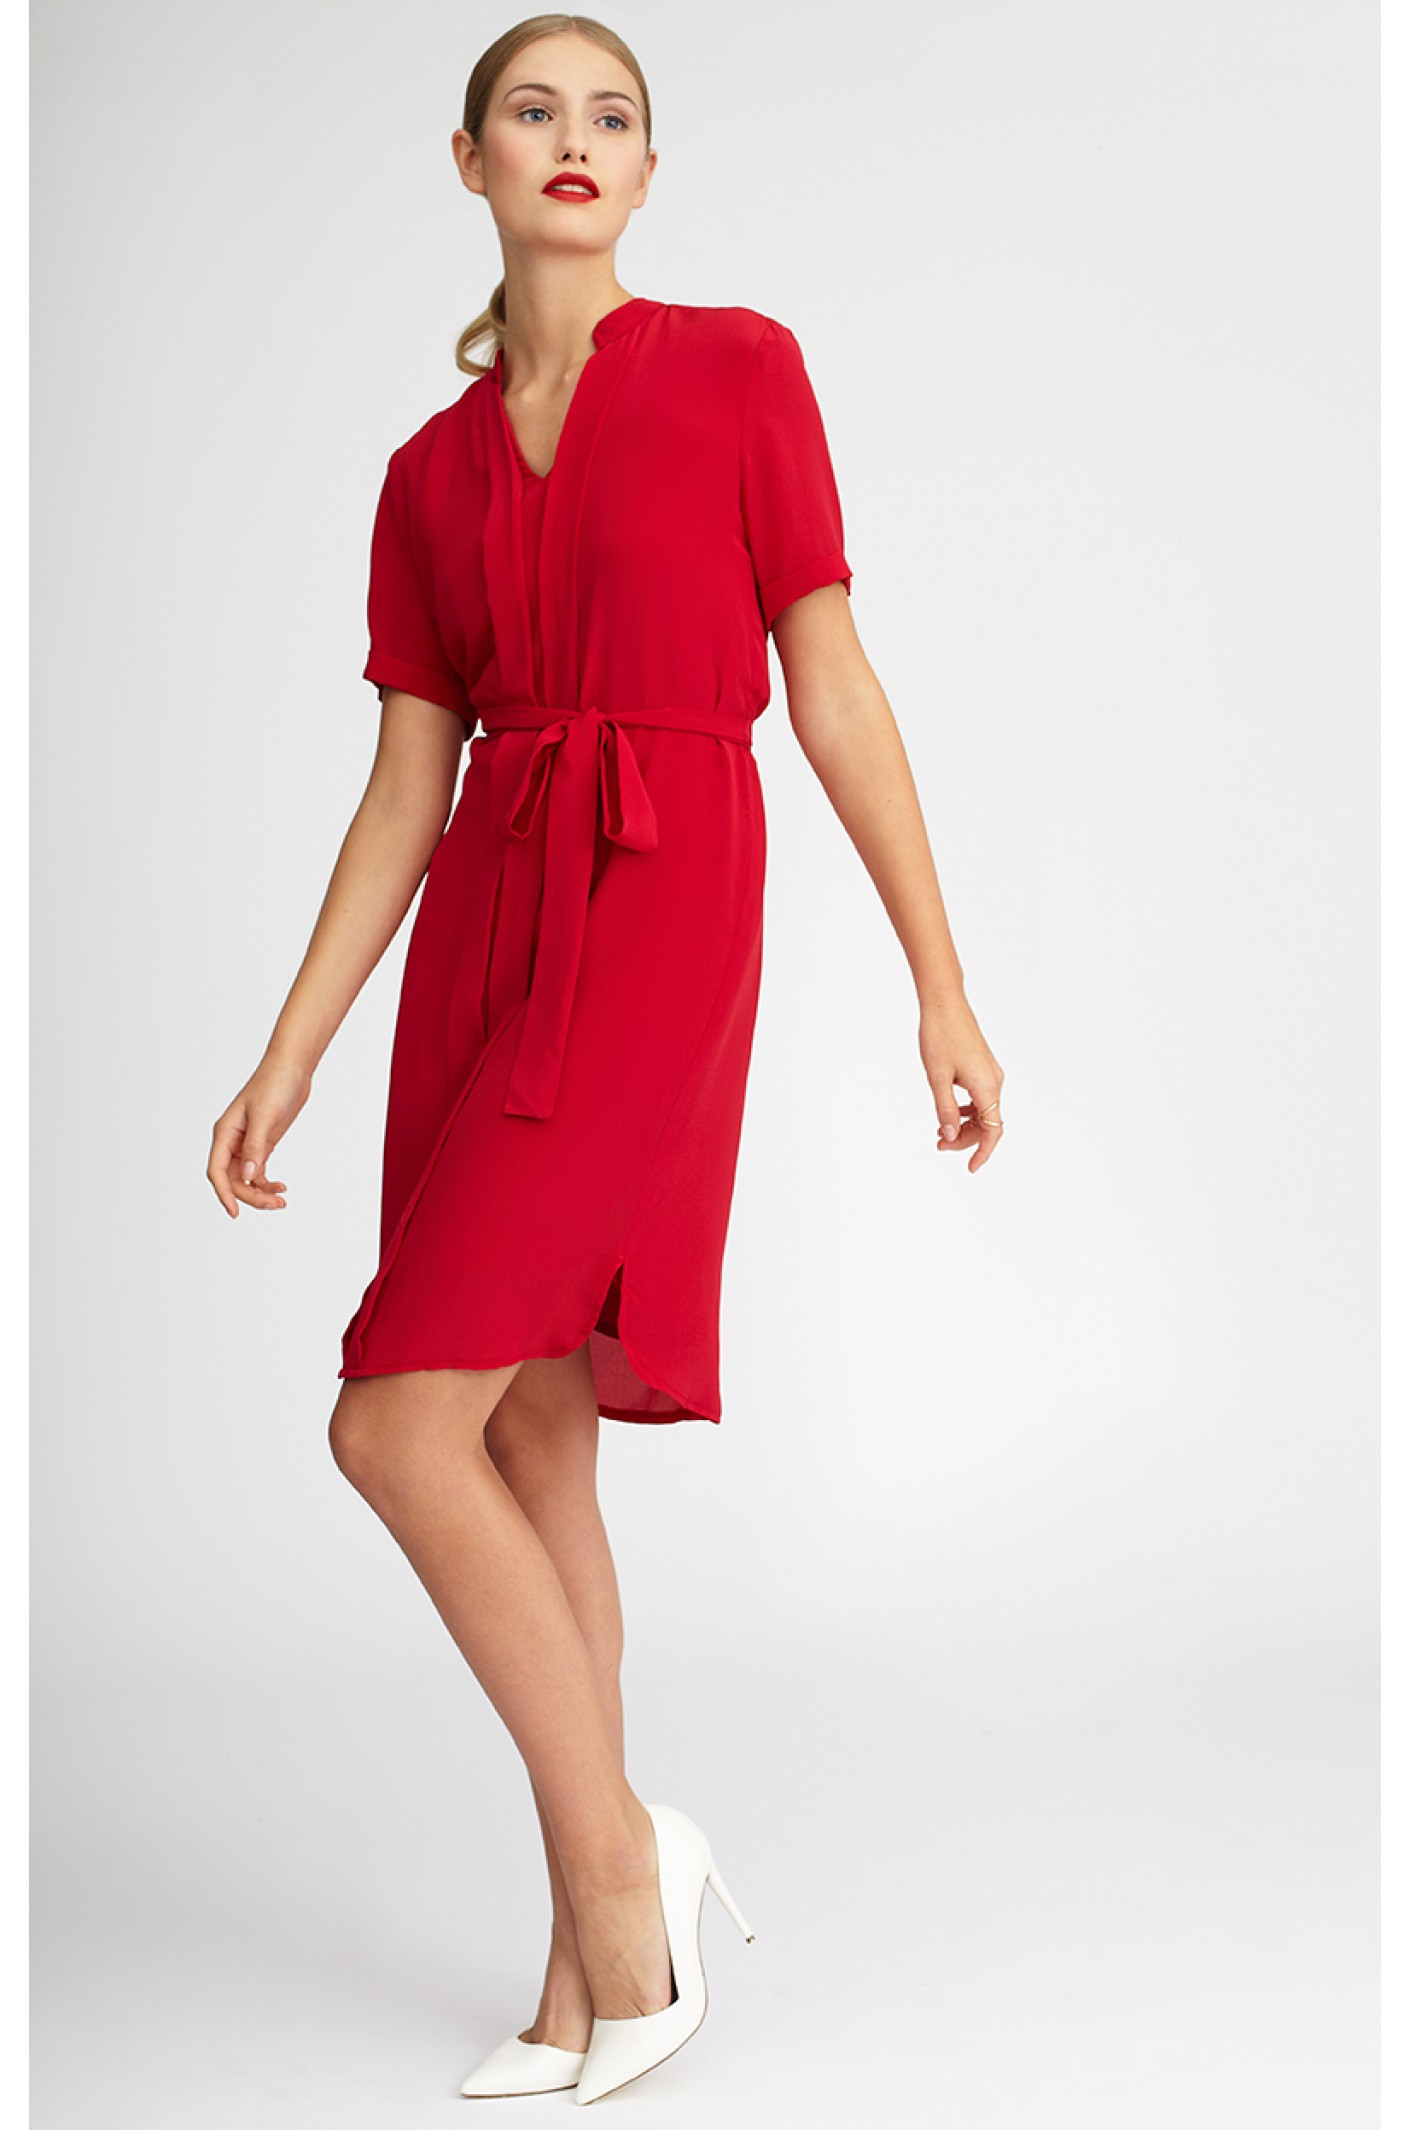 Kleid Nora Von Kala Fashion  Einen Roten Seidentraum